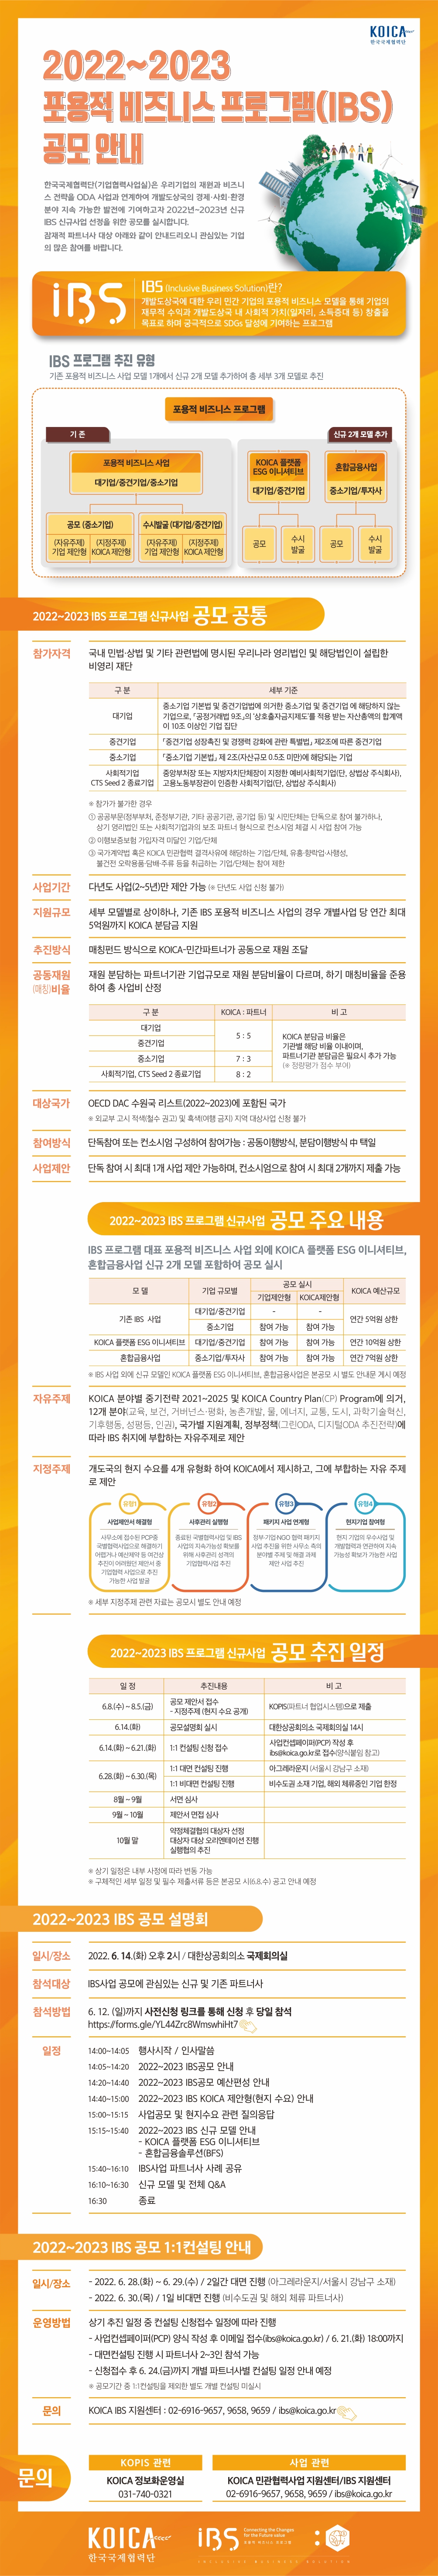 한국국제협력단(KOICA) 2022-2023년도 IBS(포용적비즈니스 프로그램) 신규사업공모 및 공모설명회 개최 안내